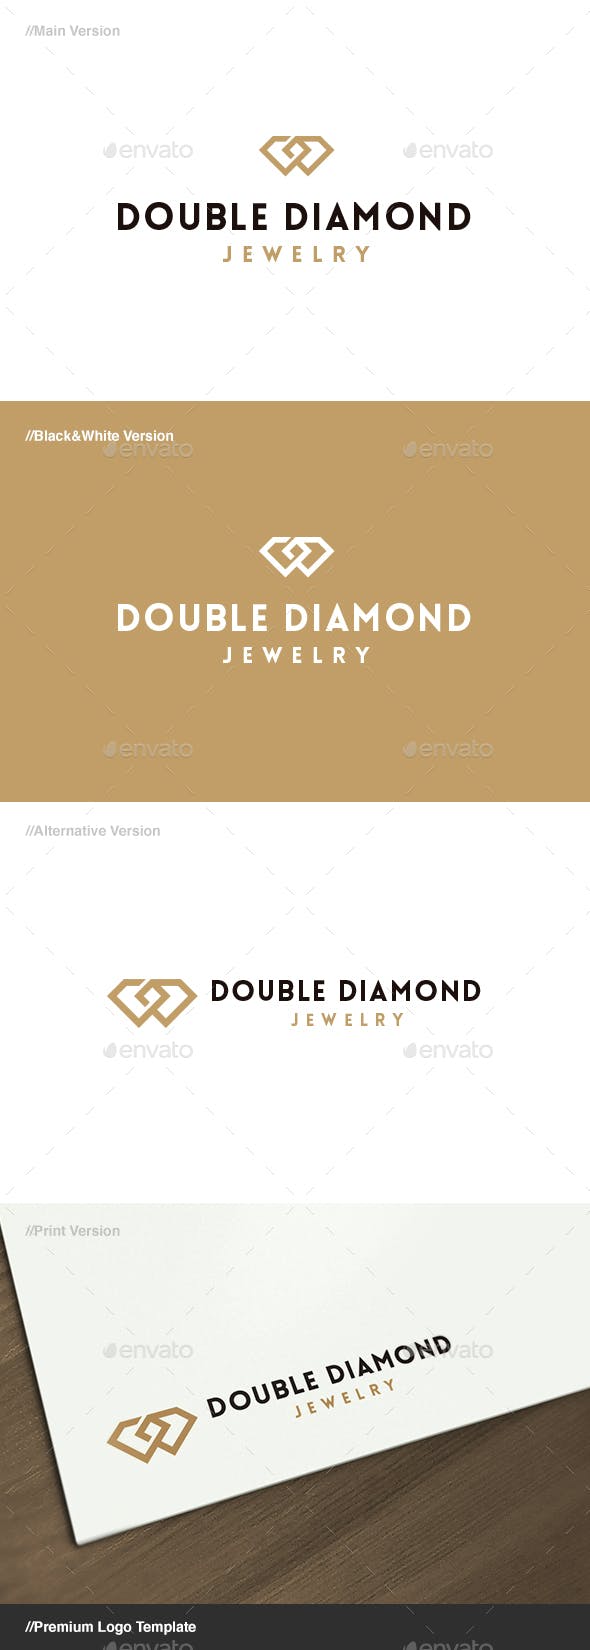 Diamond Jewelry Logo - Double Diamond Jewelry Logo by domibit | GraphicRiver